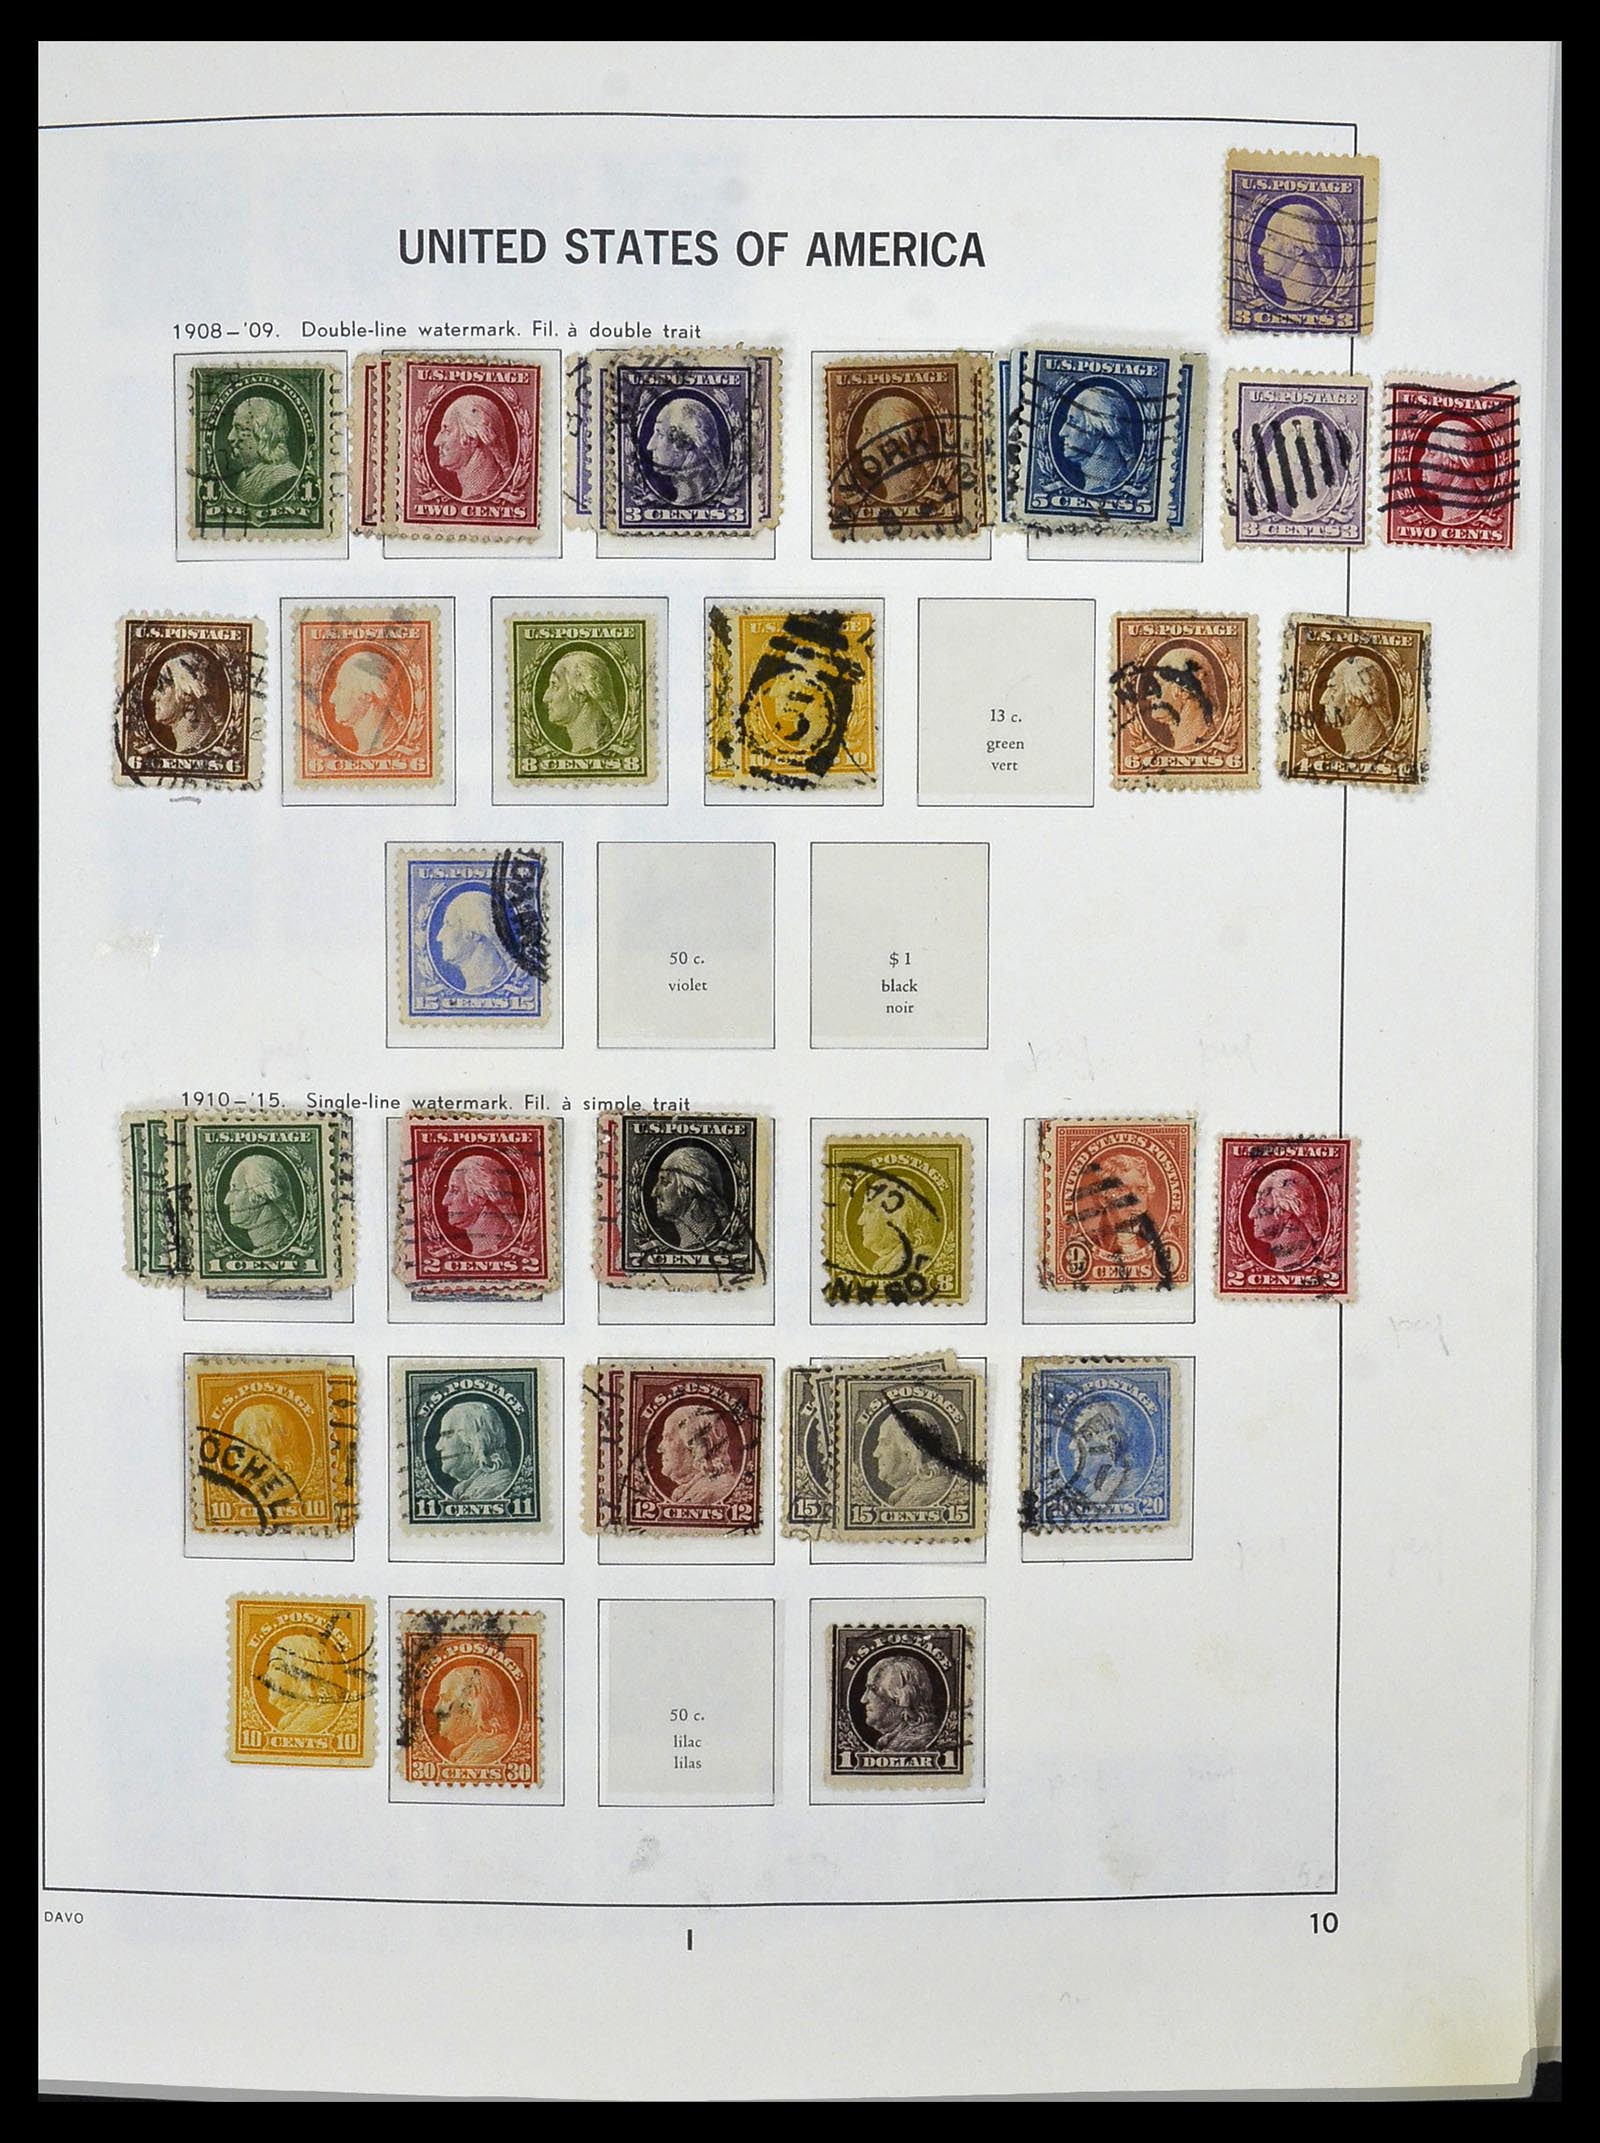 34026 023 - Stamp collection 34026 USA 1851-2001.